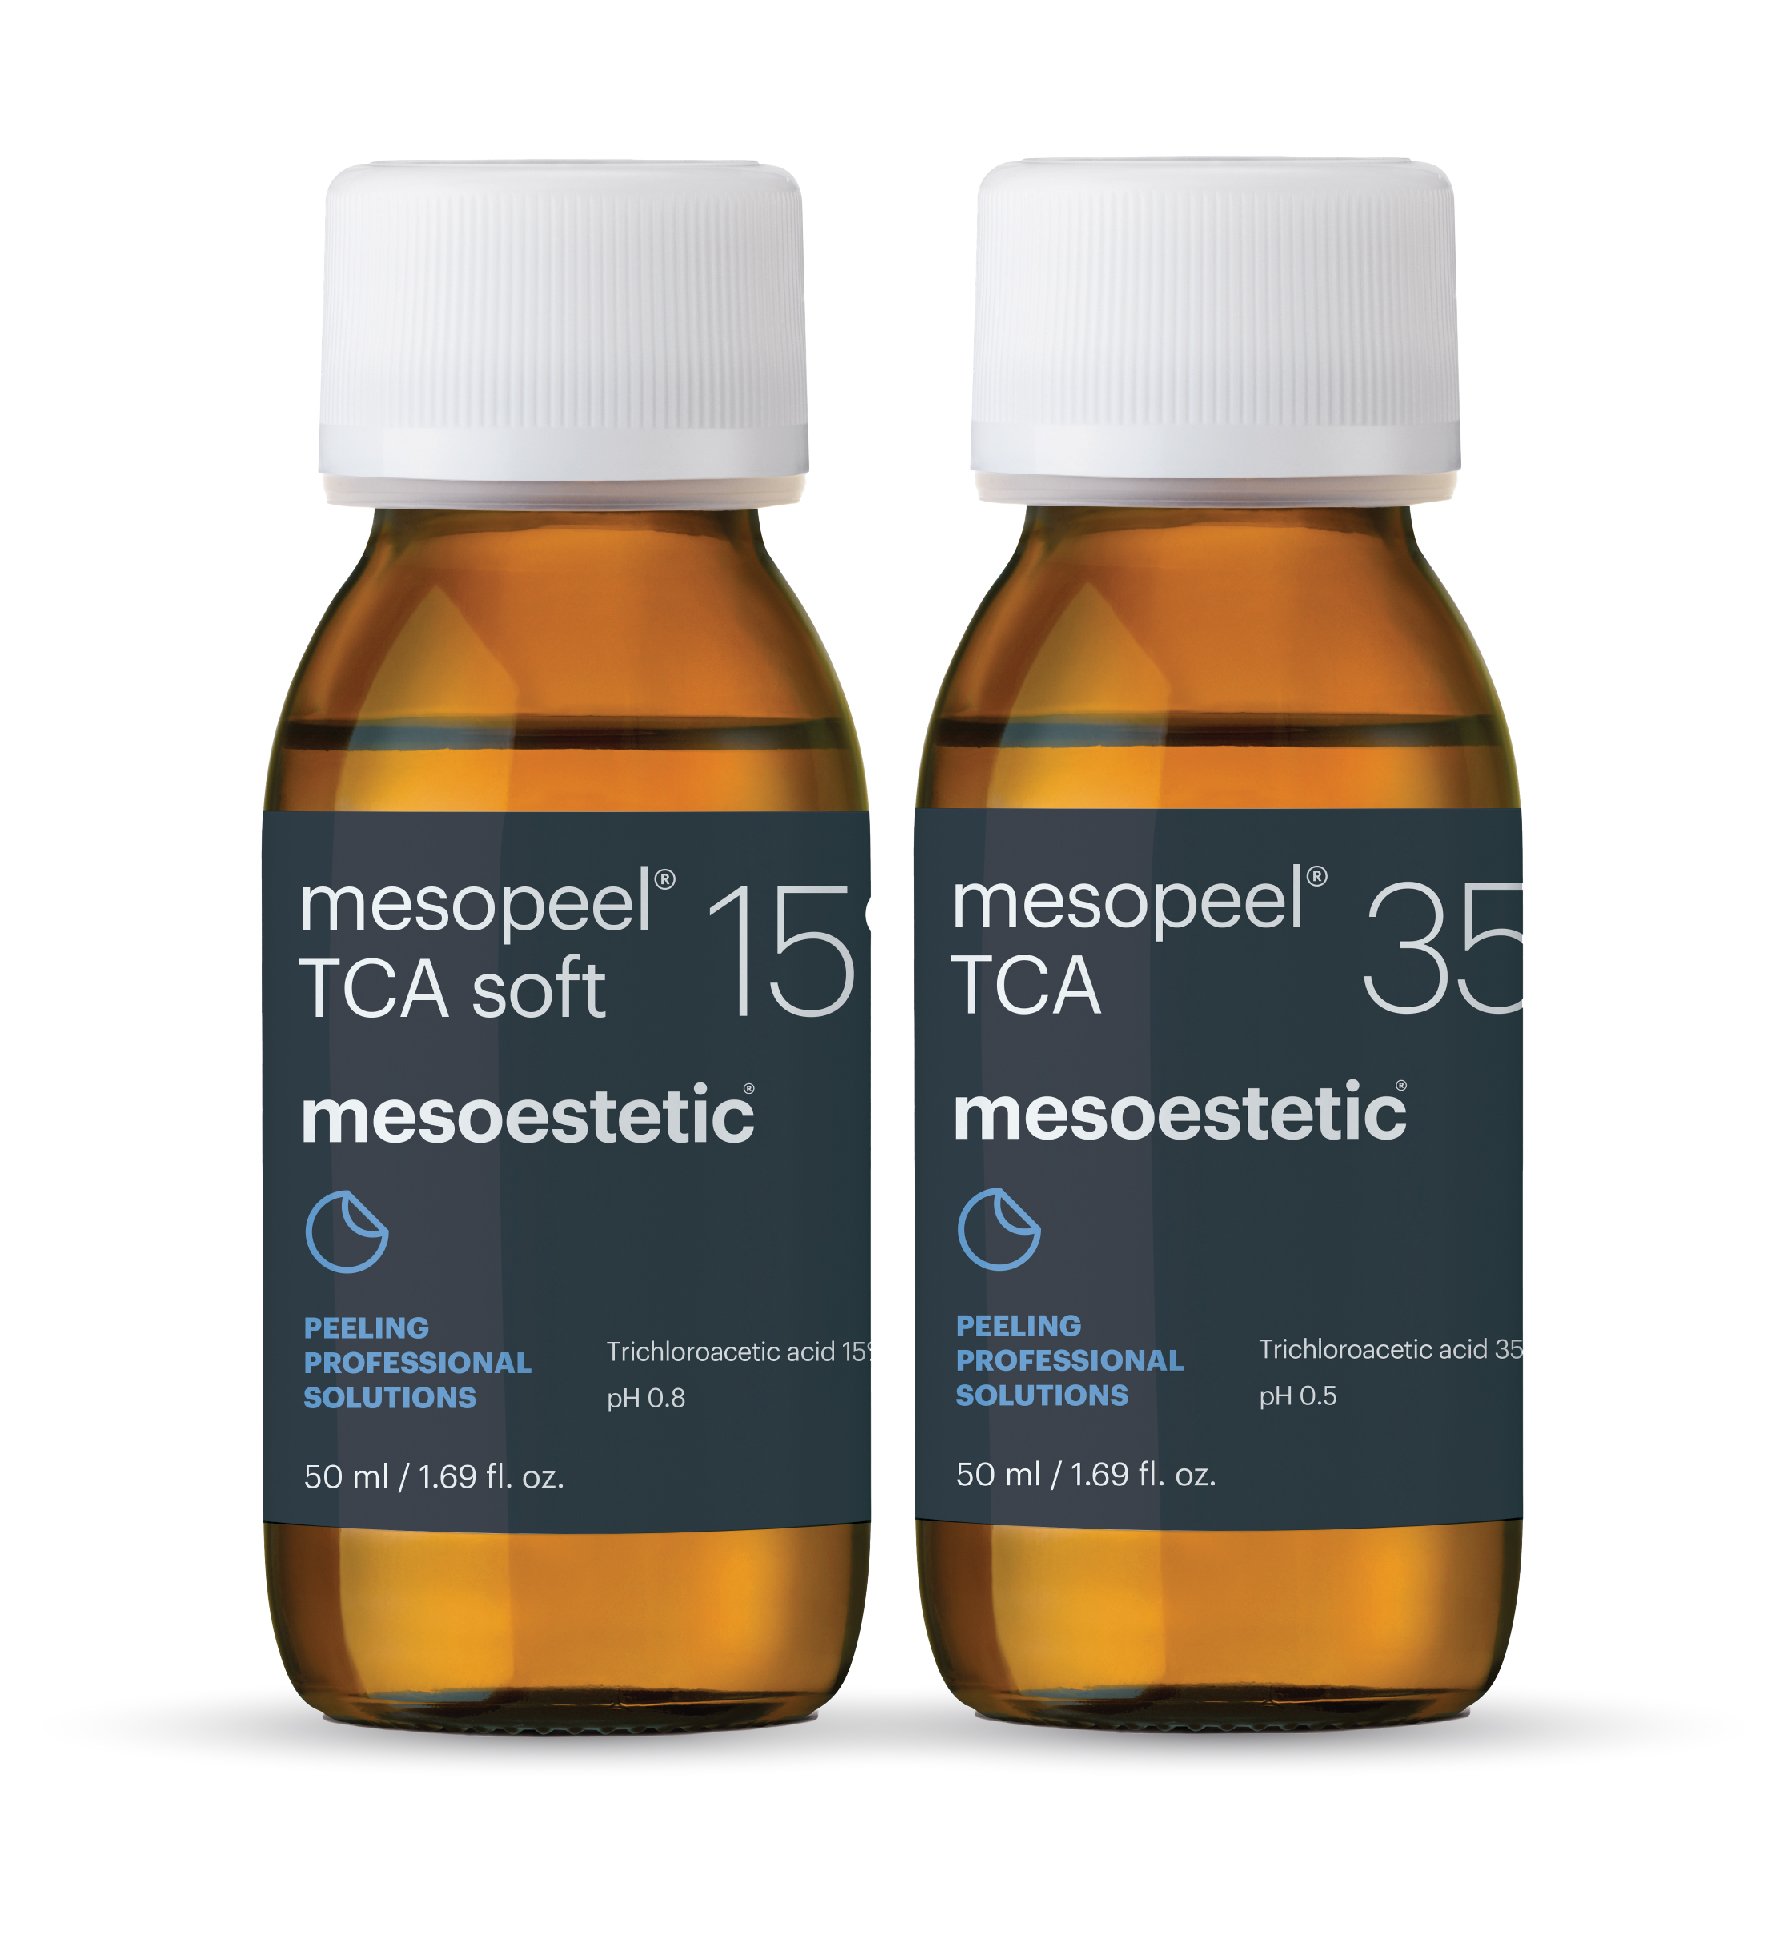 mesopeel TCA 5% 35%